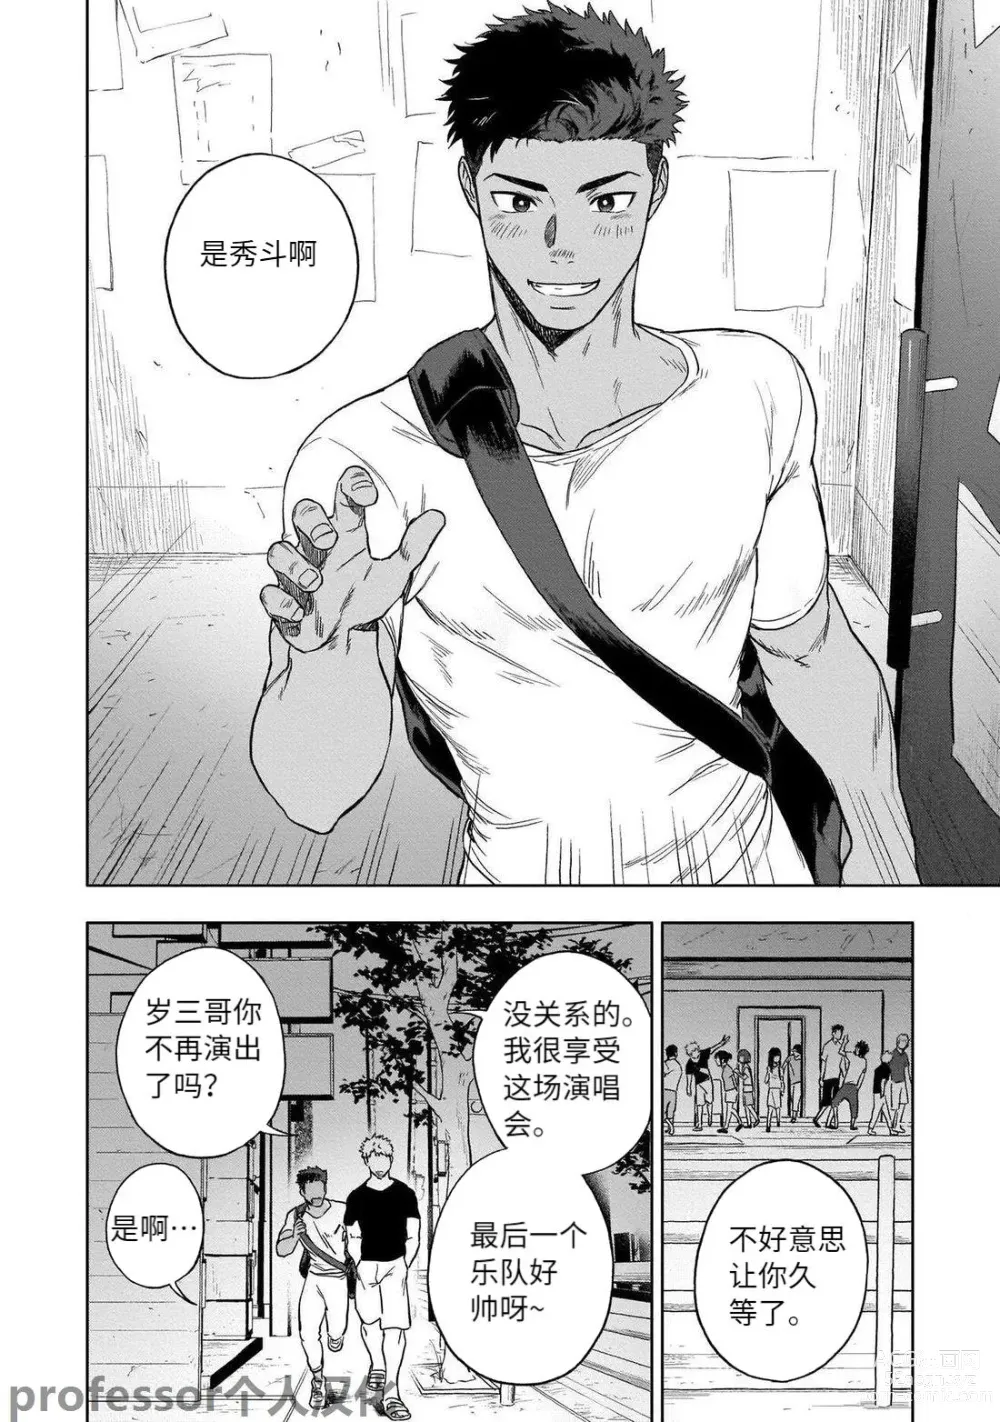 Page 4 of manga HIDK